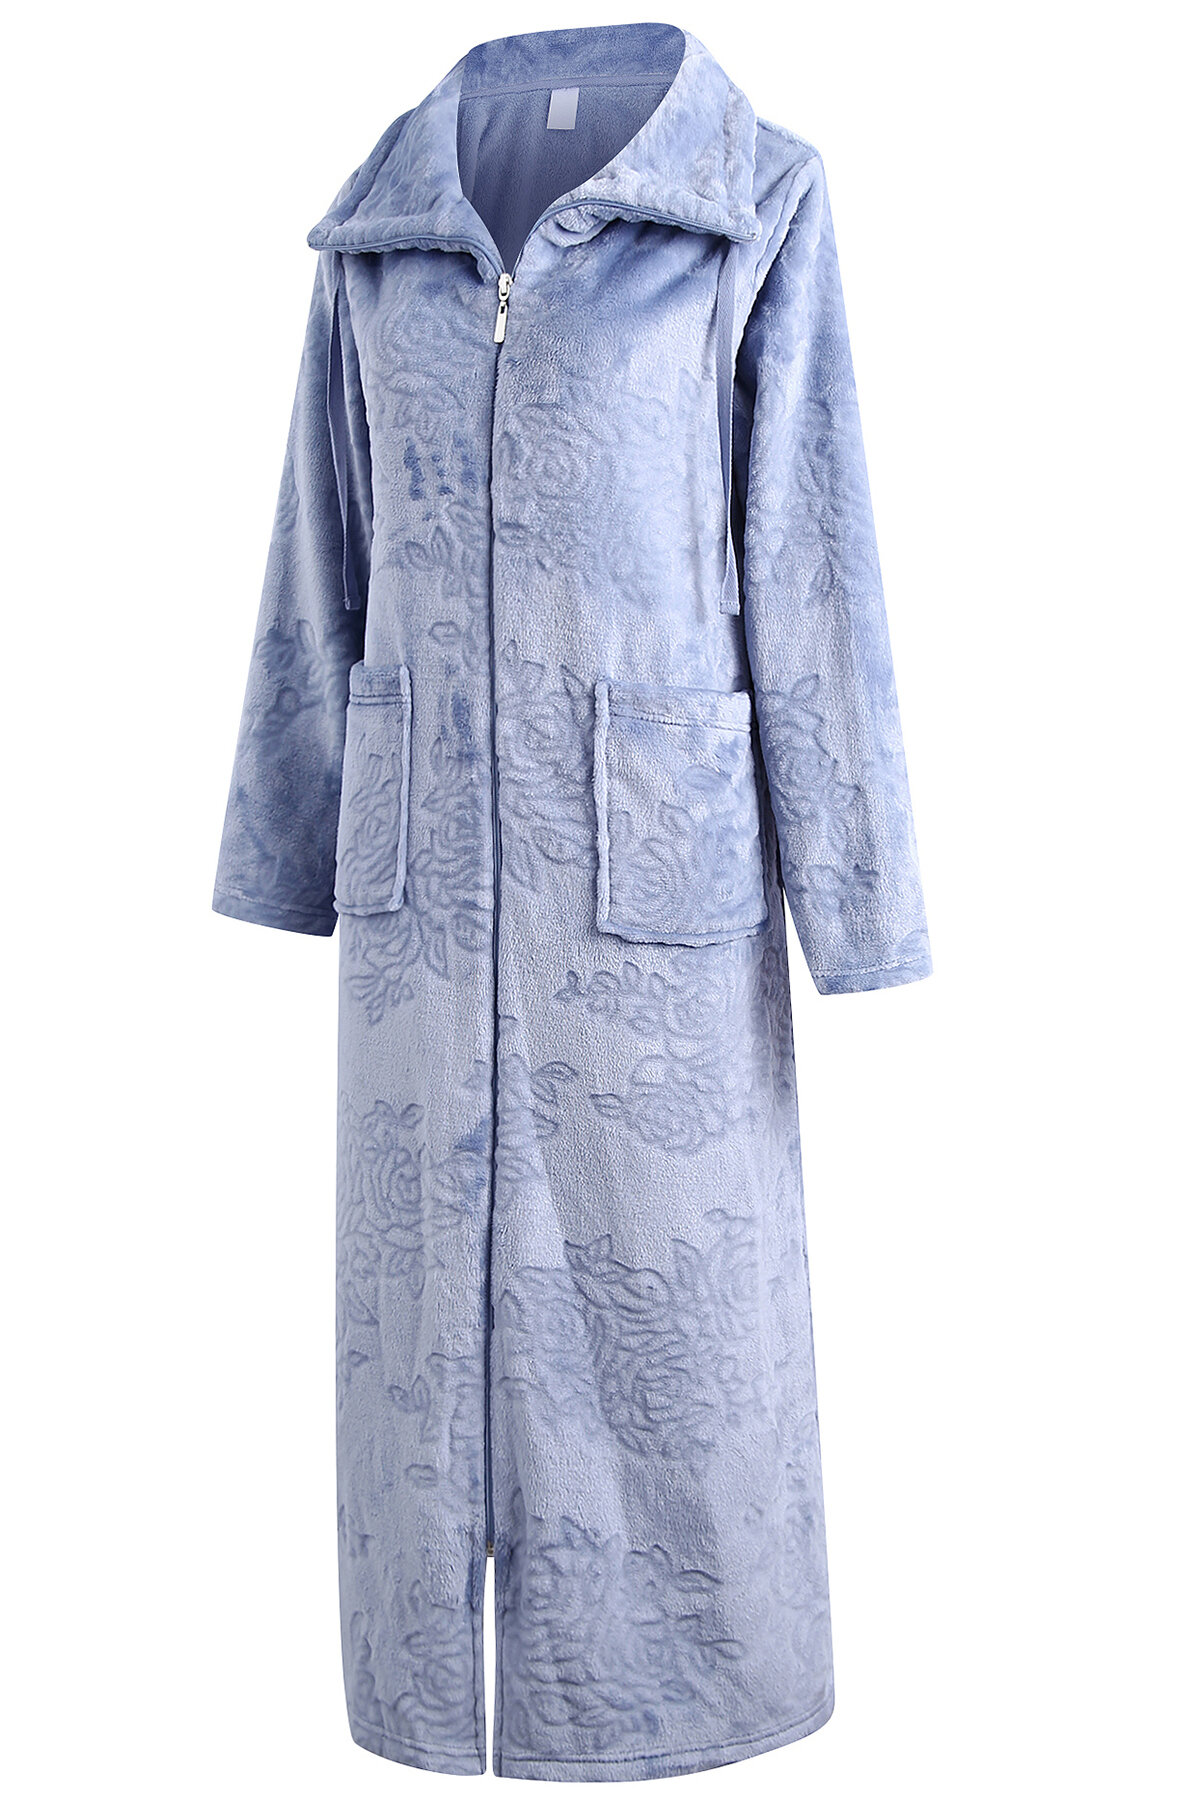 Child's Fleece Zip Up Dressing Gowns - Donann